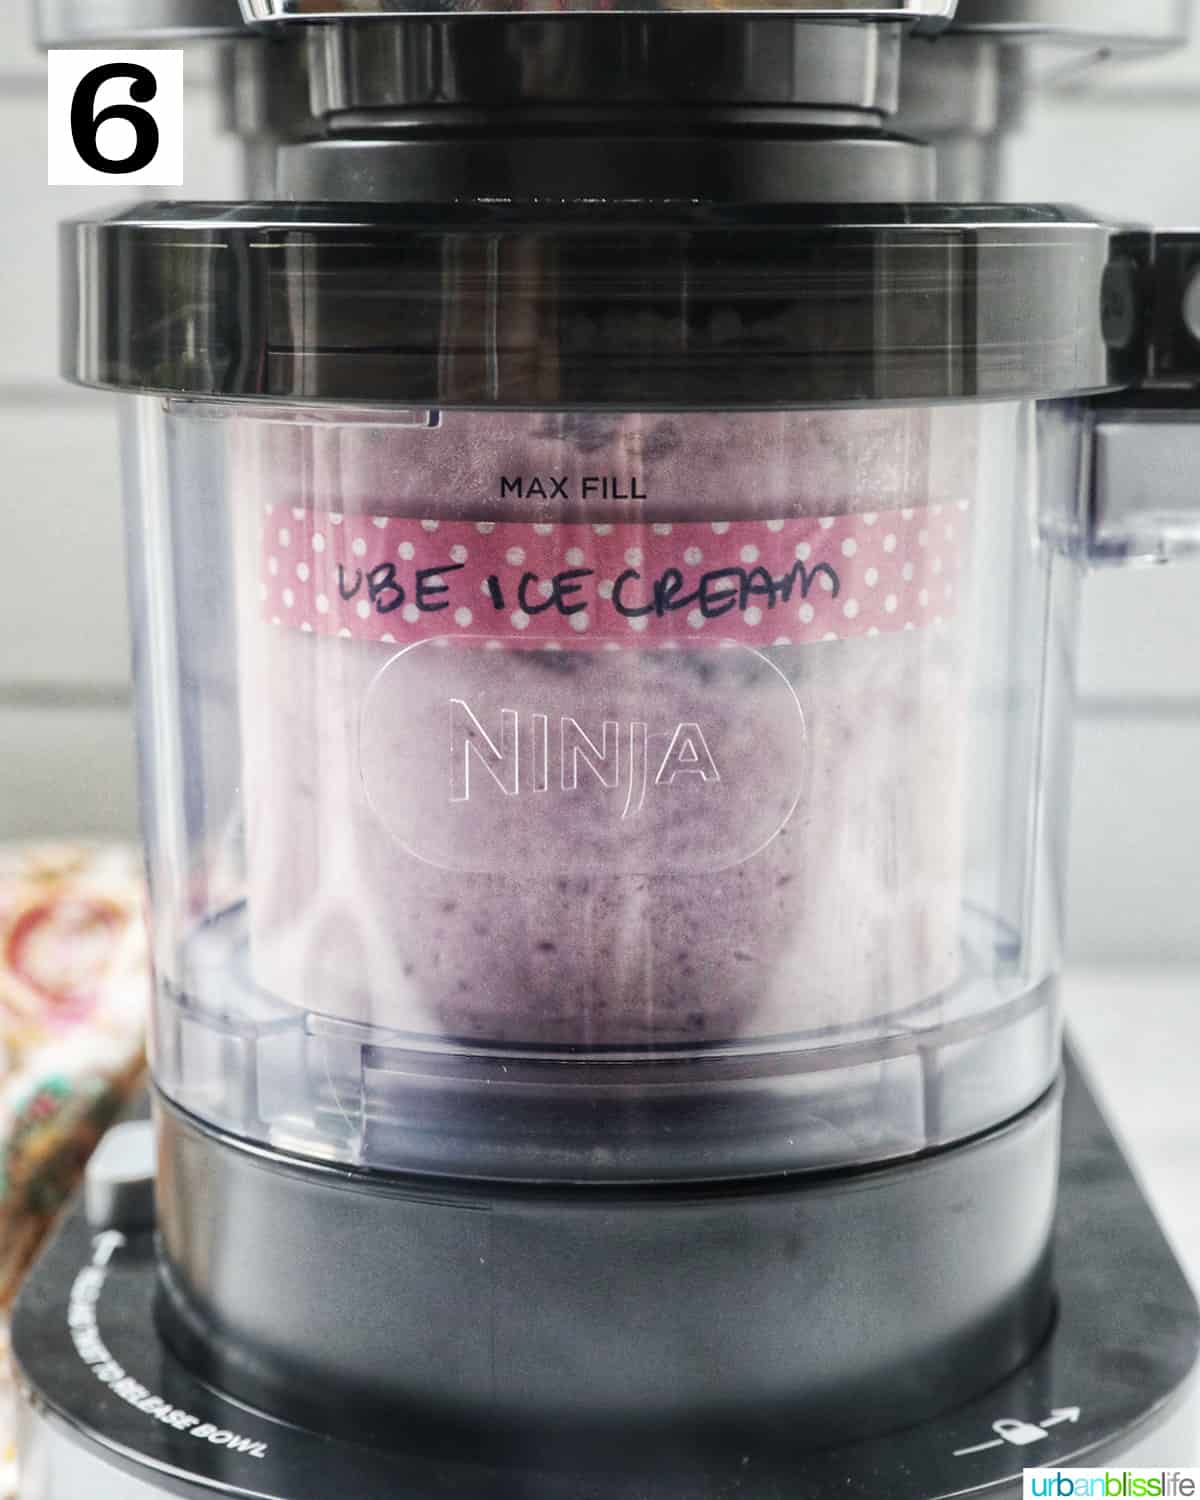 ube ice cream in the Ninja Creami machine.